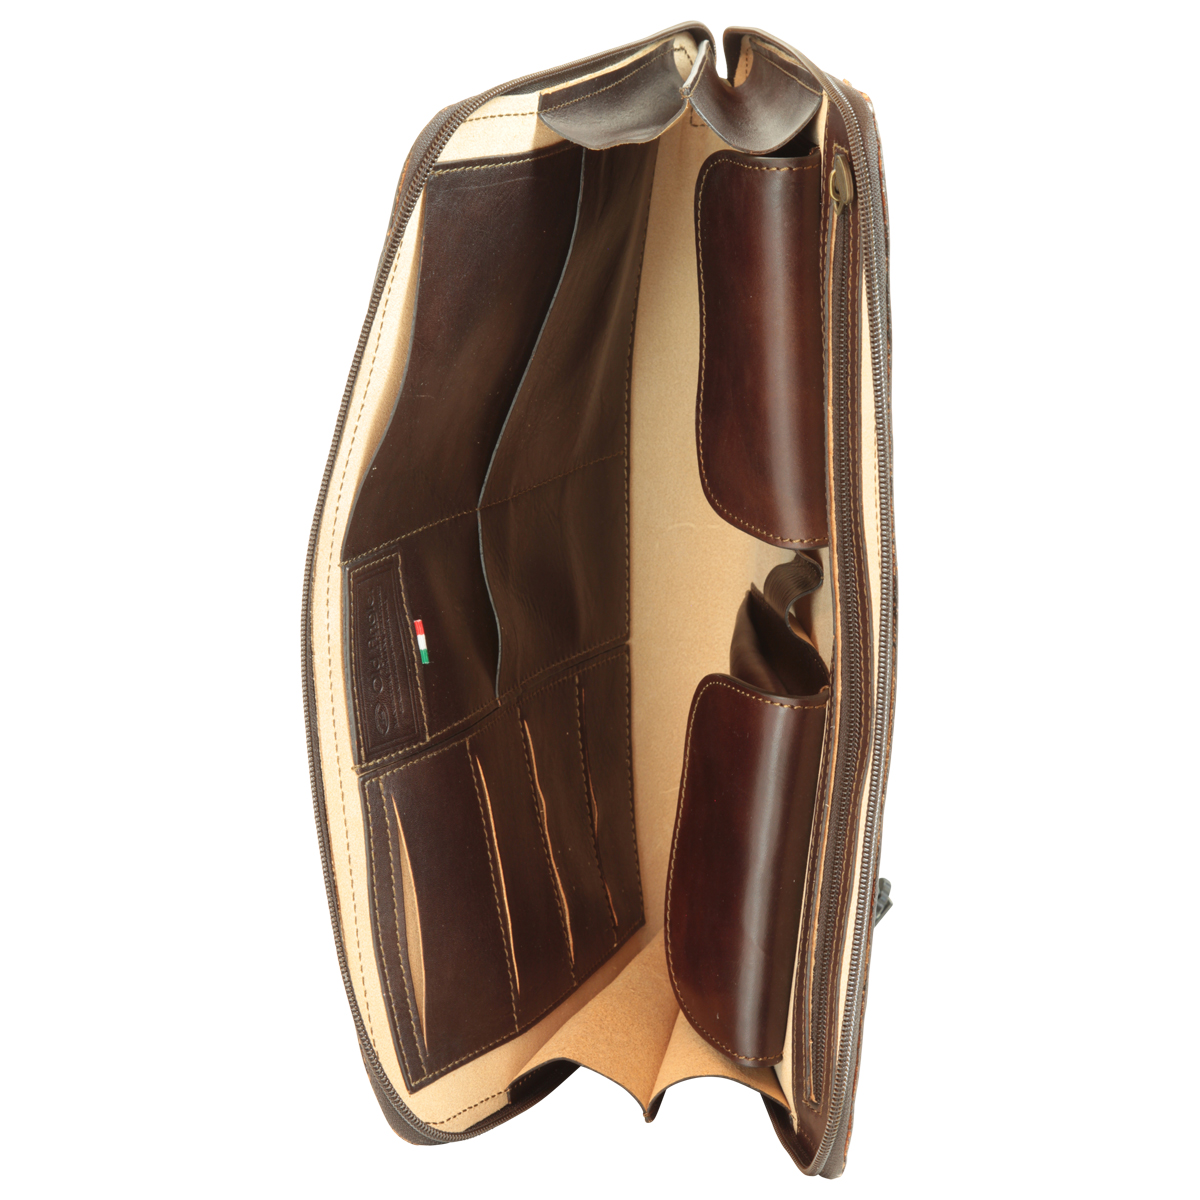 Leather Folder - Dark Brown | 056889TM US | Old Angler Firenze